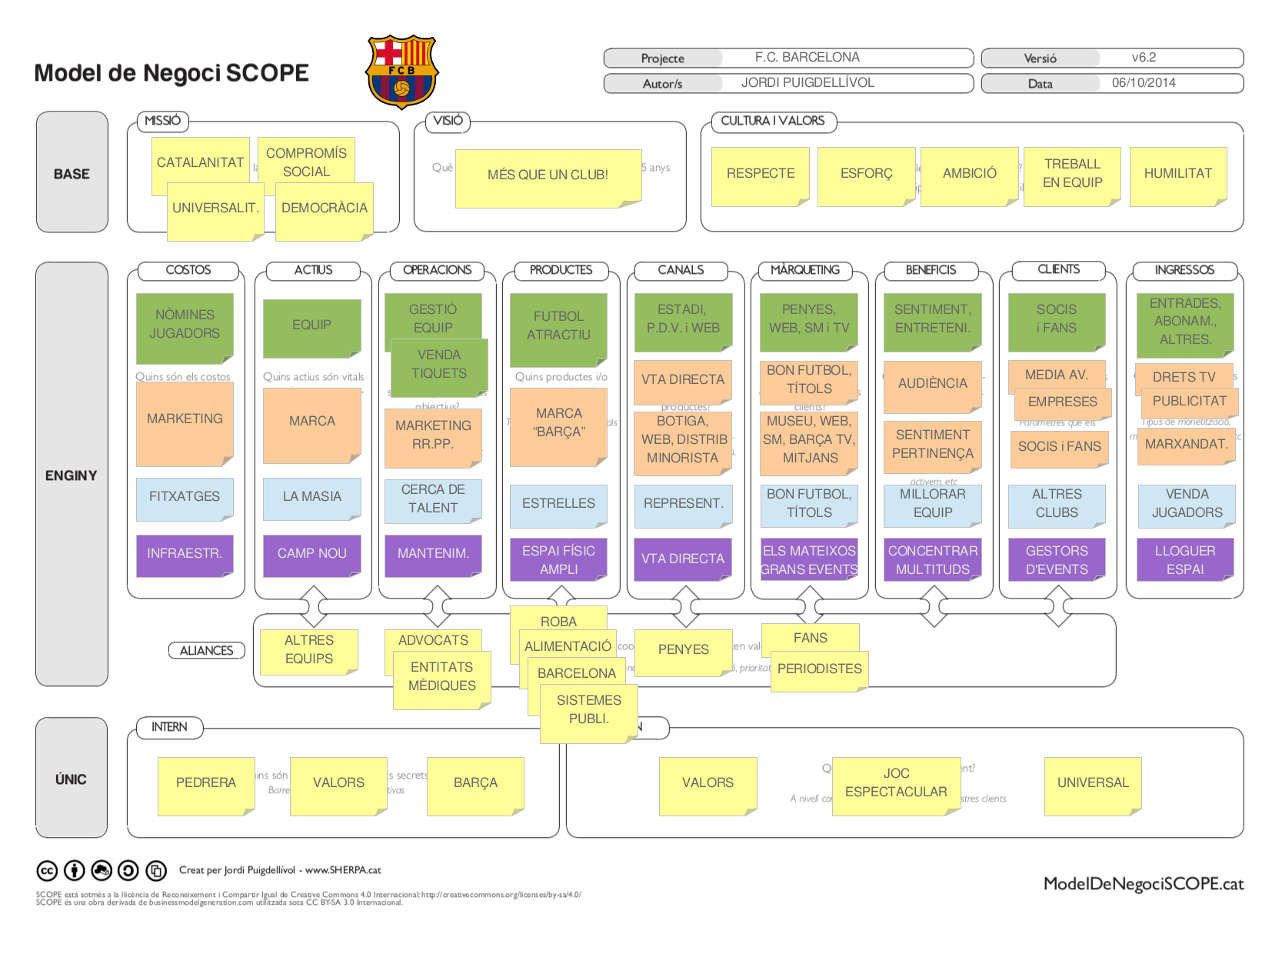 FC Barcelona - Model de Negoci SCOPE